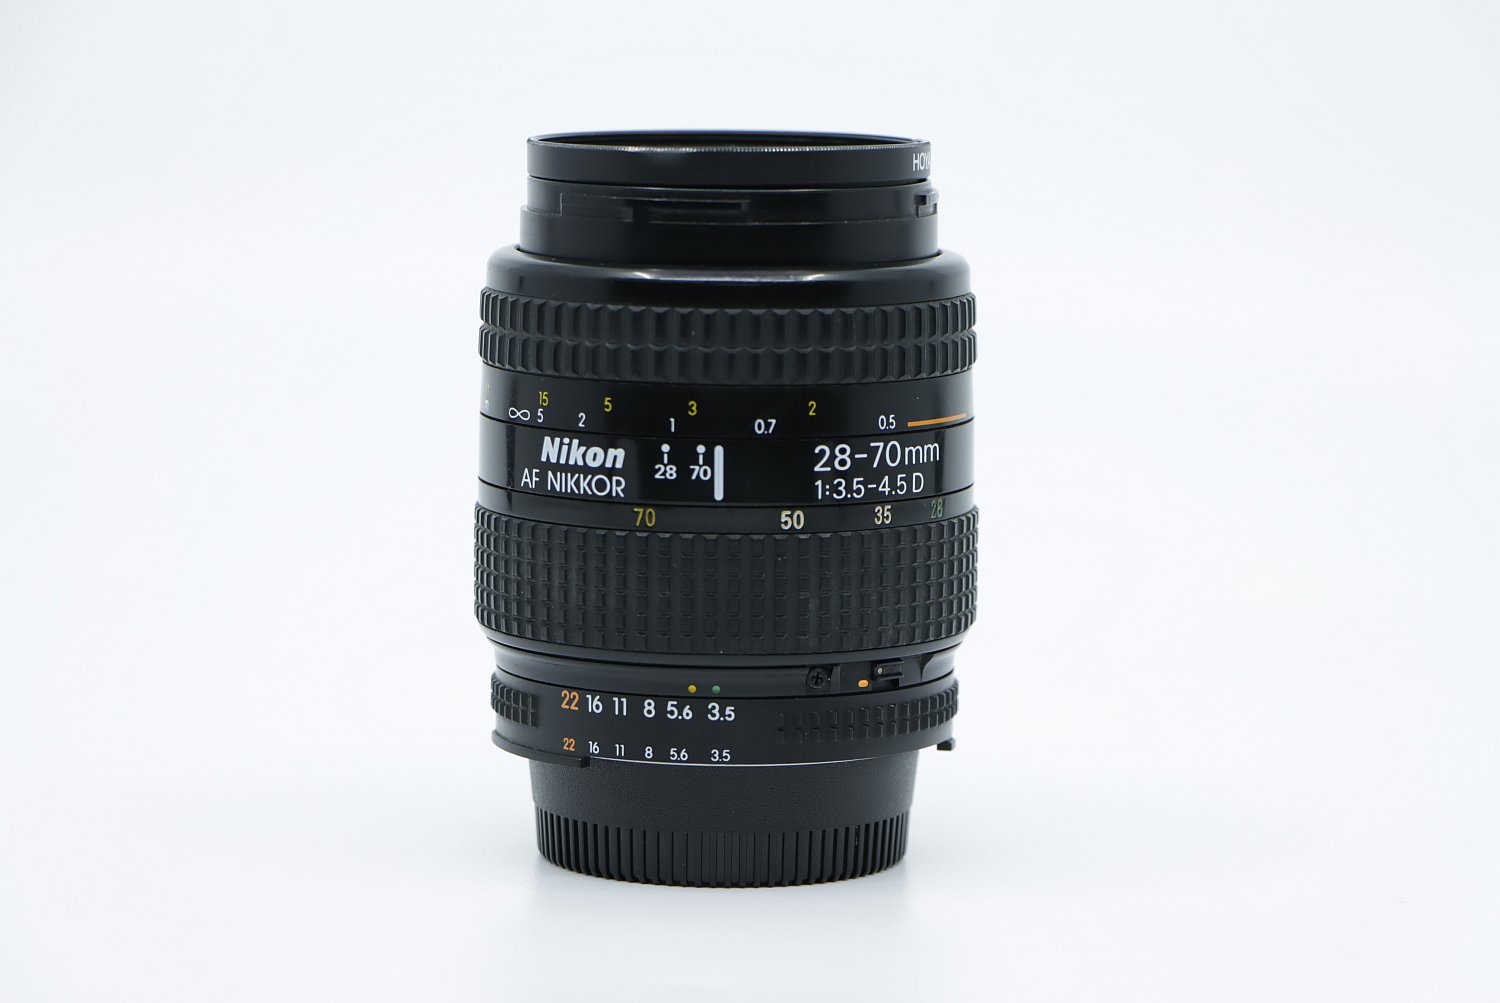 Nikon AF NIKKOR 28-70mm F3.5-4.5D | IMG_6272.JPG